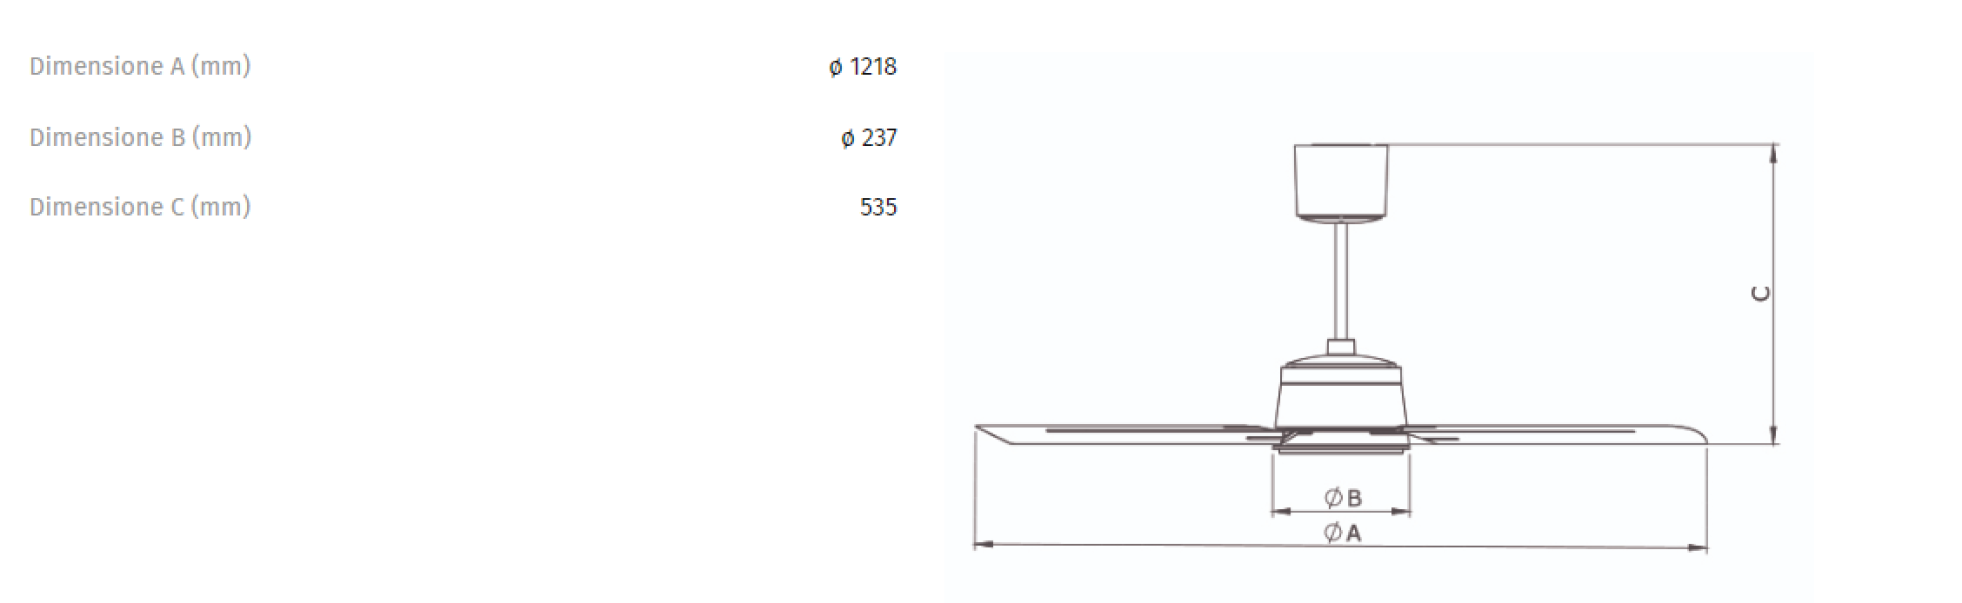 Ventilatore da soffitto Vortice Nordik Eco 120/48 reversibile risparmio energetico - 0000061061 02